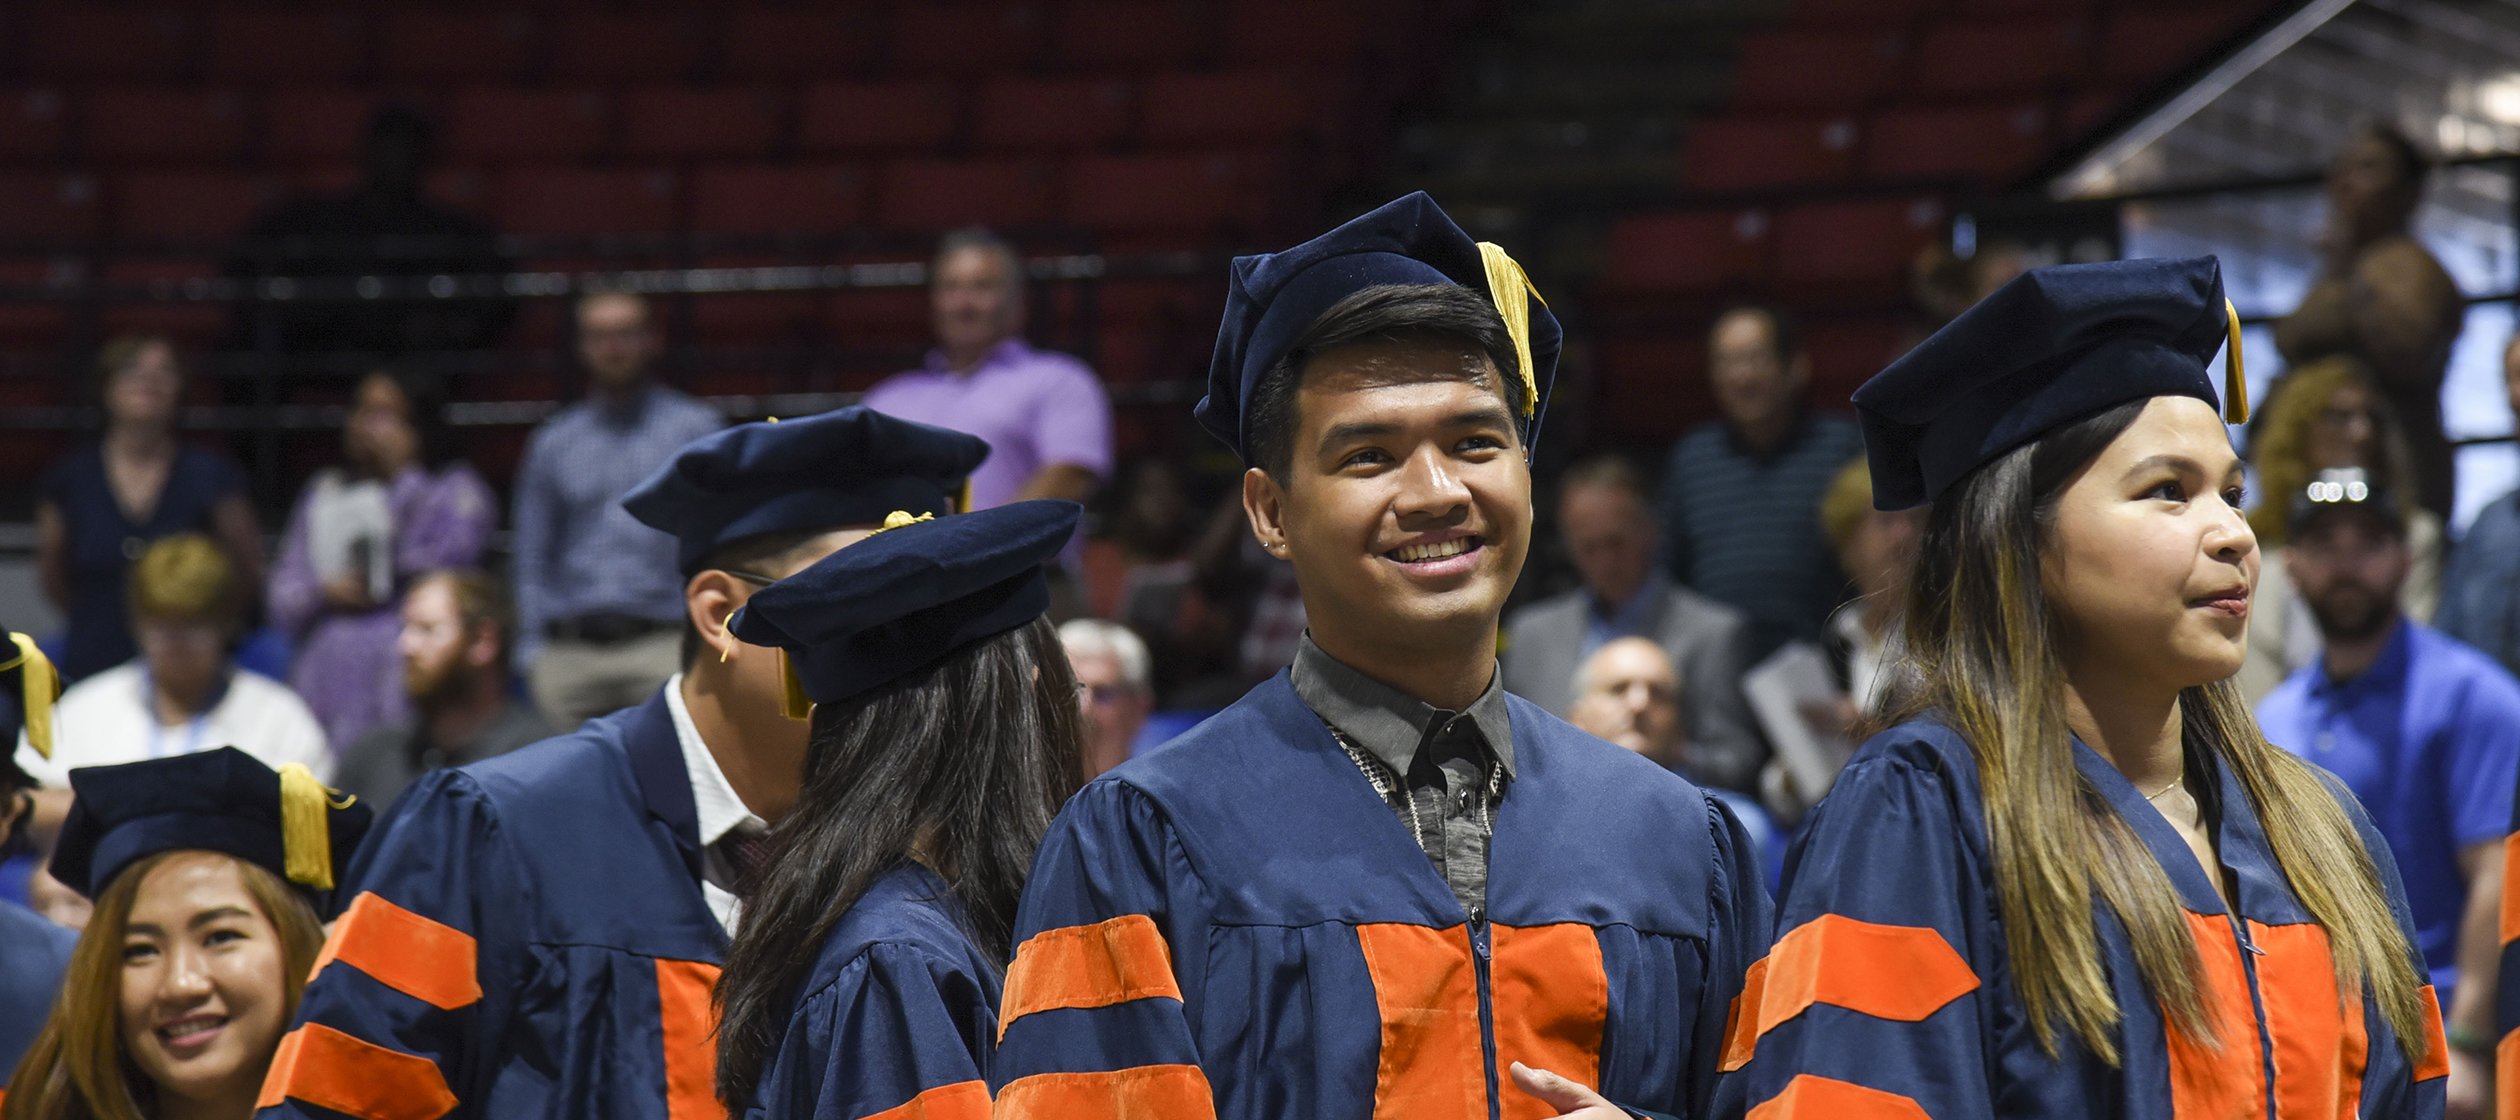 Graduate Commencement at Utica University